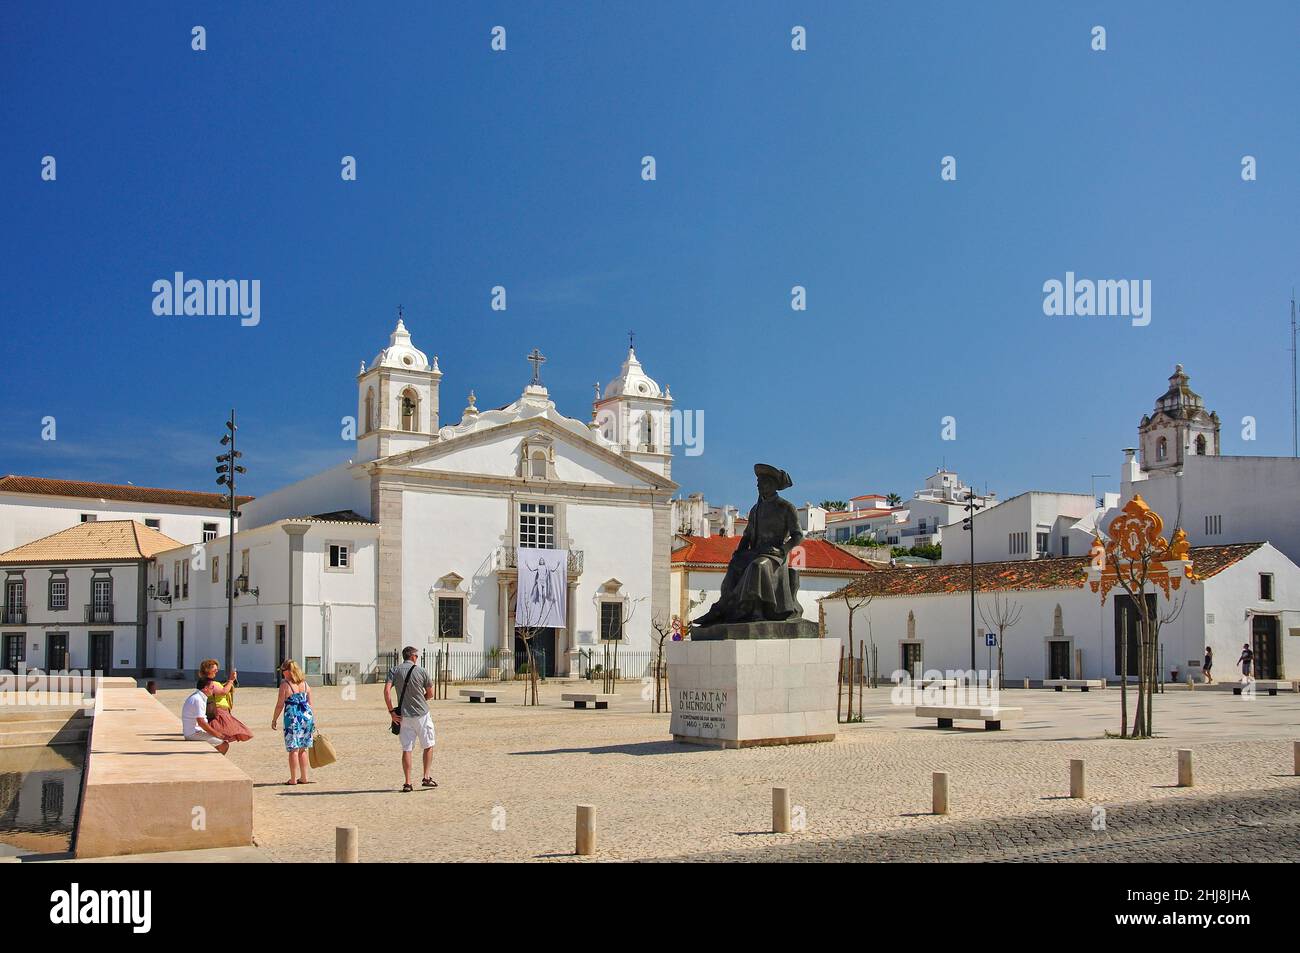 Praca da Republica, Lagos, Algarve, Portugal Stockfoto